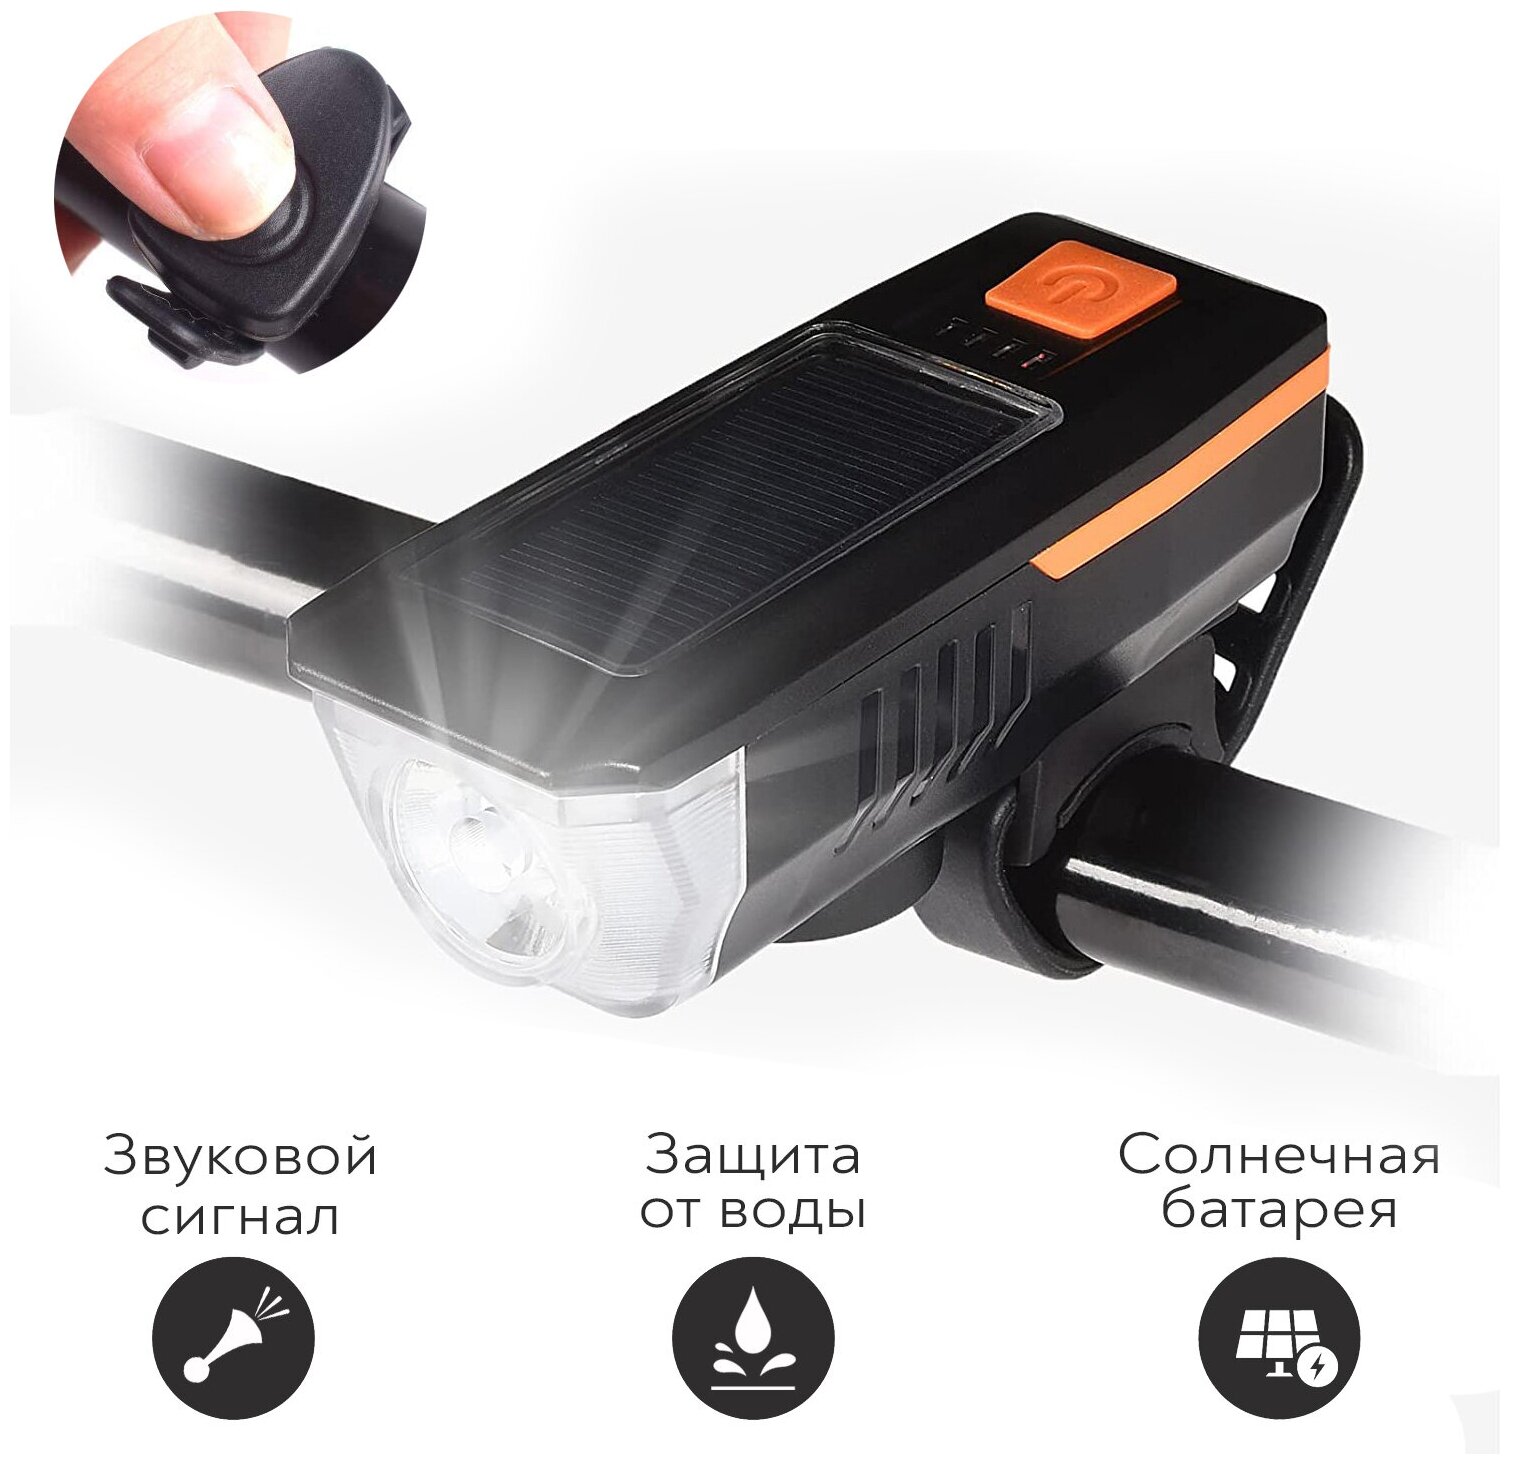 Велосипедный фонарь SimpleShop со встроенным аккумулятором и USB зарядкой / Светодиодный фонарь передний на солнечной батареи с сигналом / велофара — купить в интернет-магазине по низкой цене на Яндекс Маркете